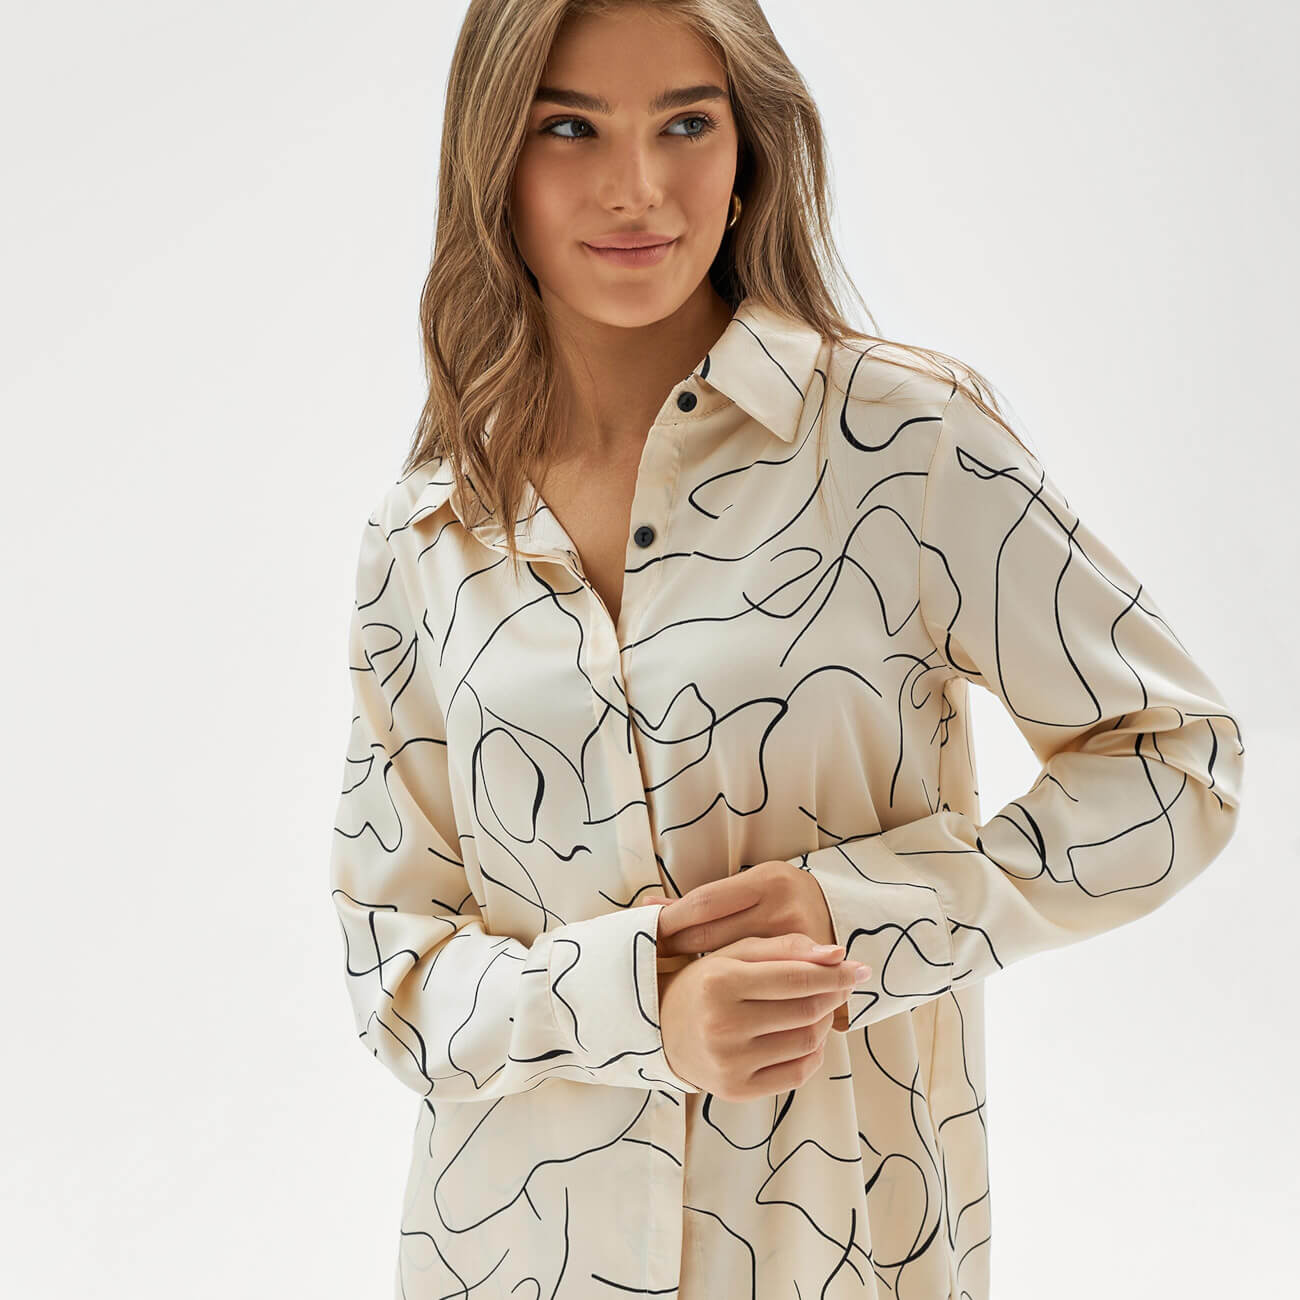 Рубашка женская, домашняя, р. XL, с длинным рукавом, полиэстер, бежевая, Лица, Face